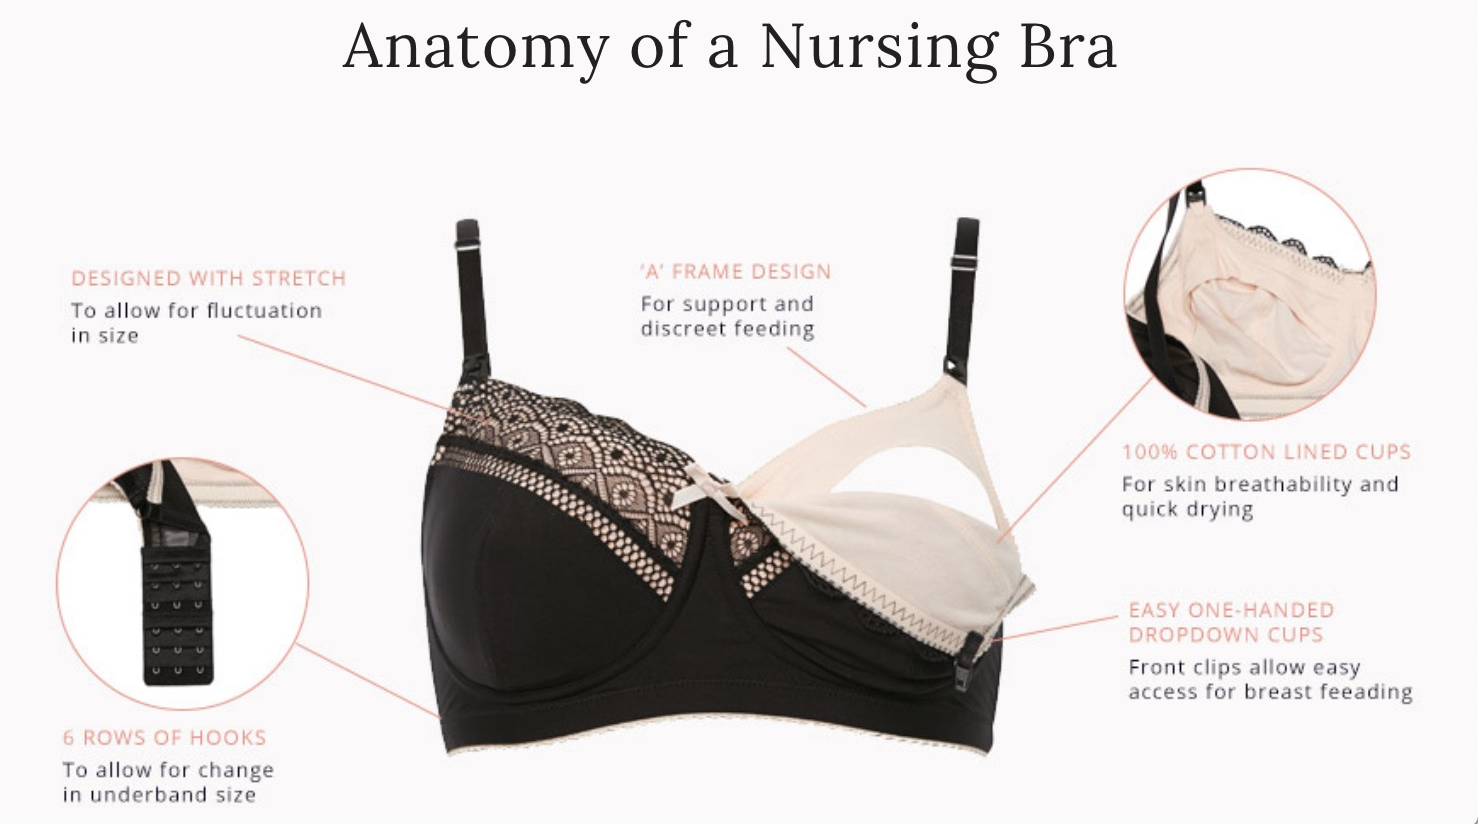 A frame nursing bra